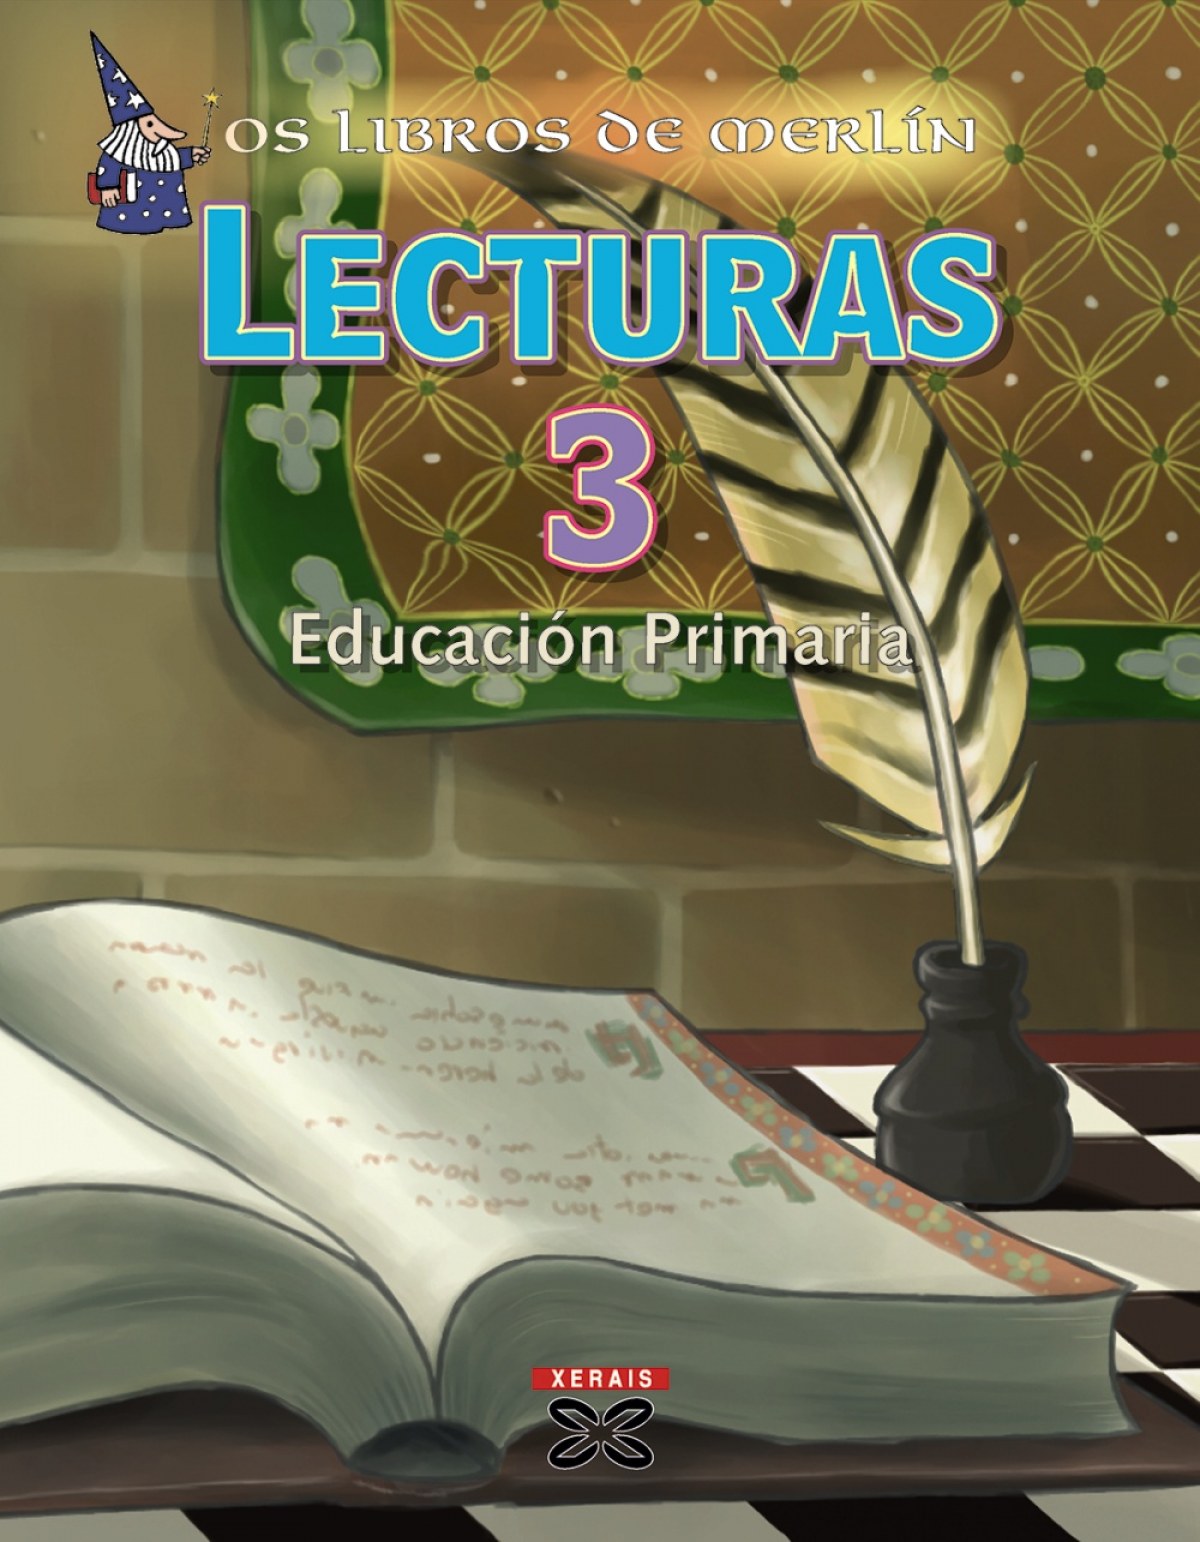 (g).(08).libros de merlin 3º.prim.*lecturas xerais* - González Montañés, Óscar/Pernas Pernas, Marga/Rodiles Lamas, Rosana